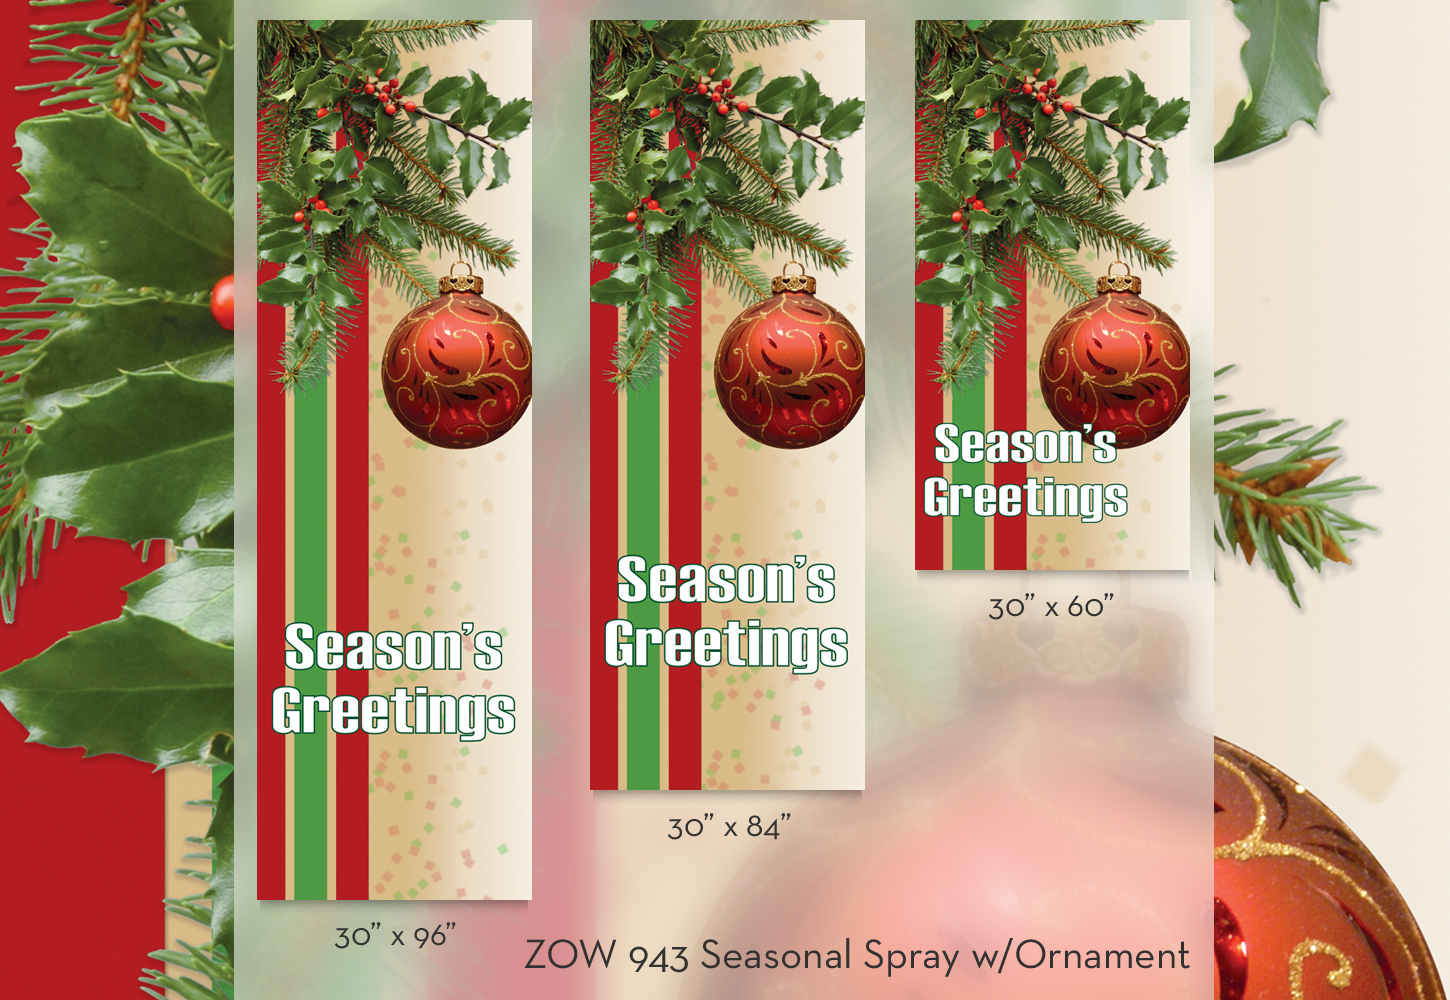 ZOW 943 Seasonal Spray w/Ornament